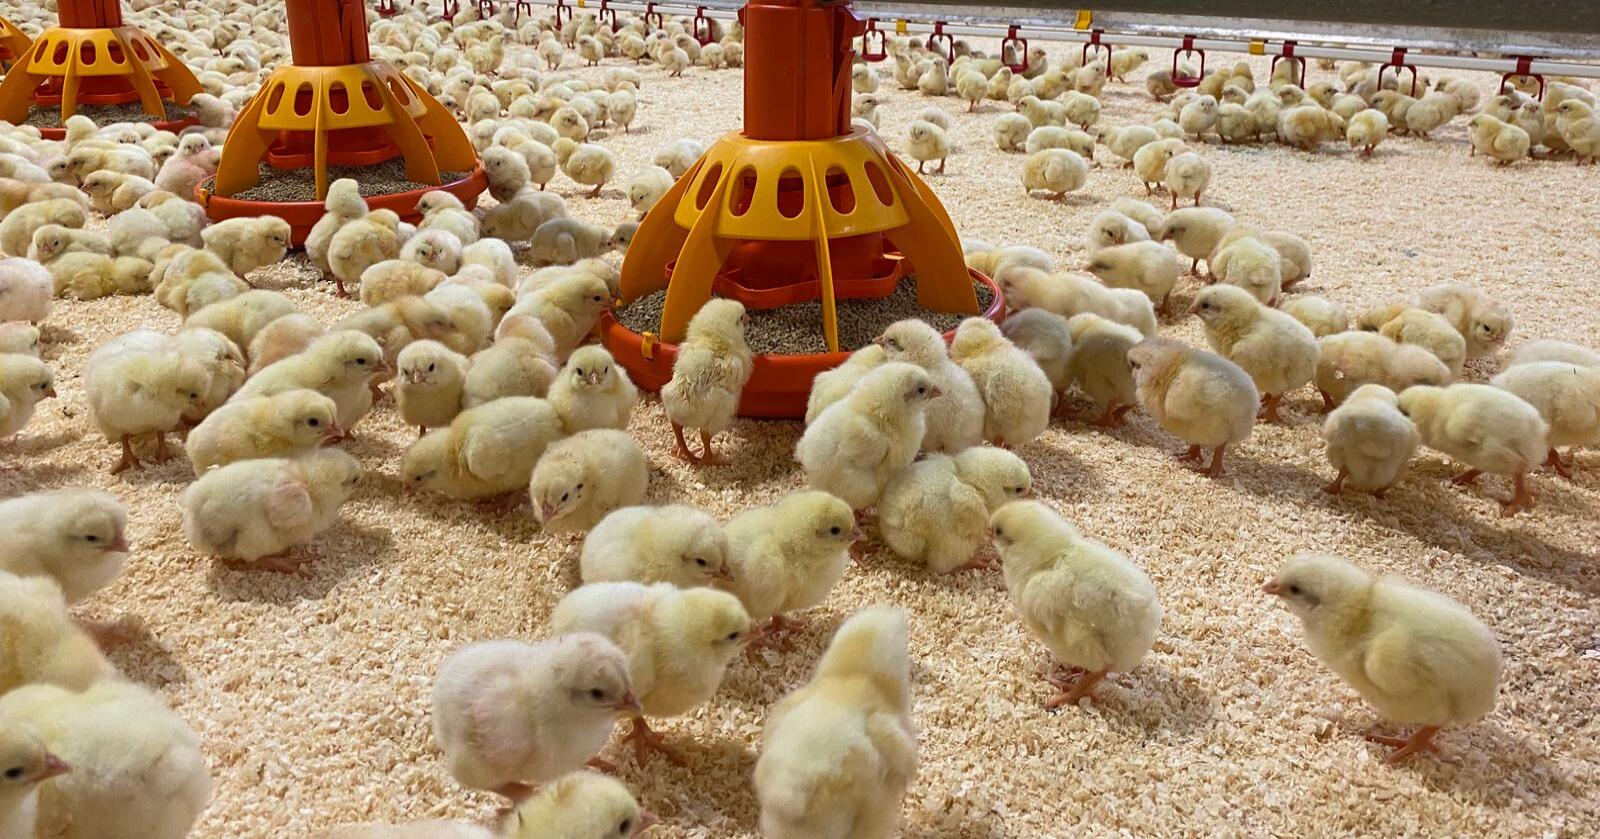 Dyrevernorganisasjonen Anima jobber for å få produsenter til å fase ut kyllingrasen Ross 308. Foto: Camilla Mellemstrand